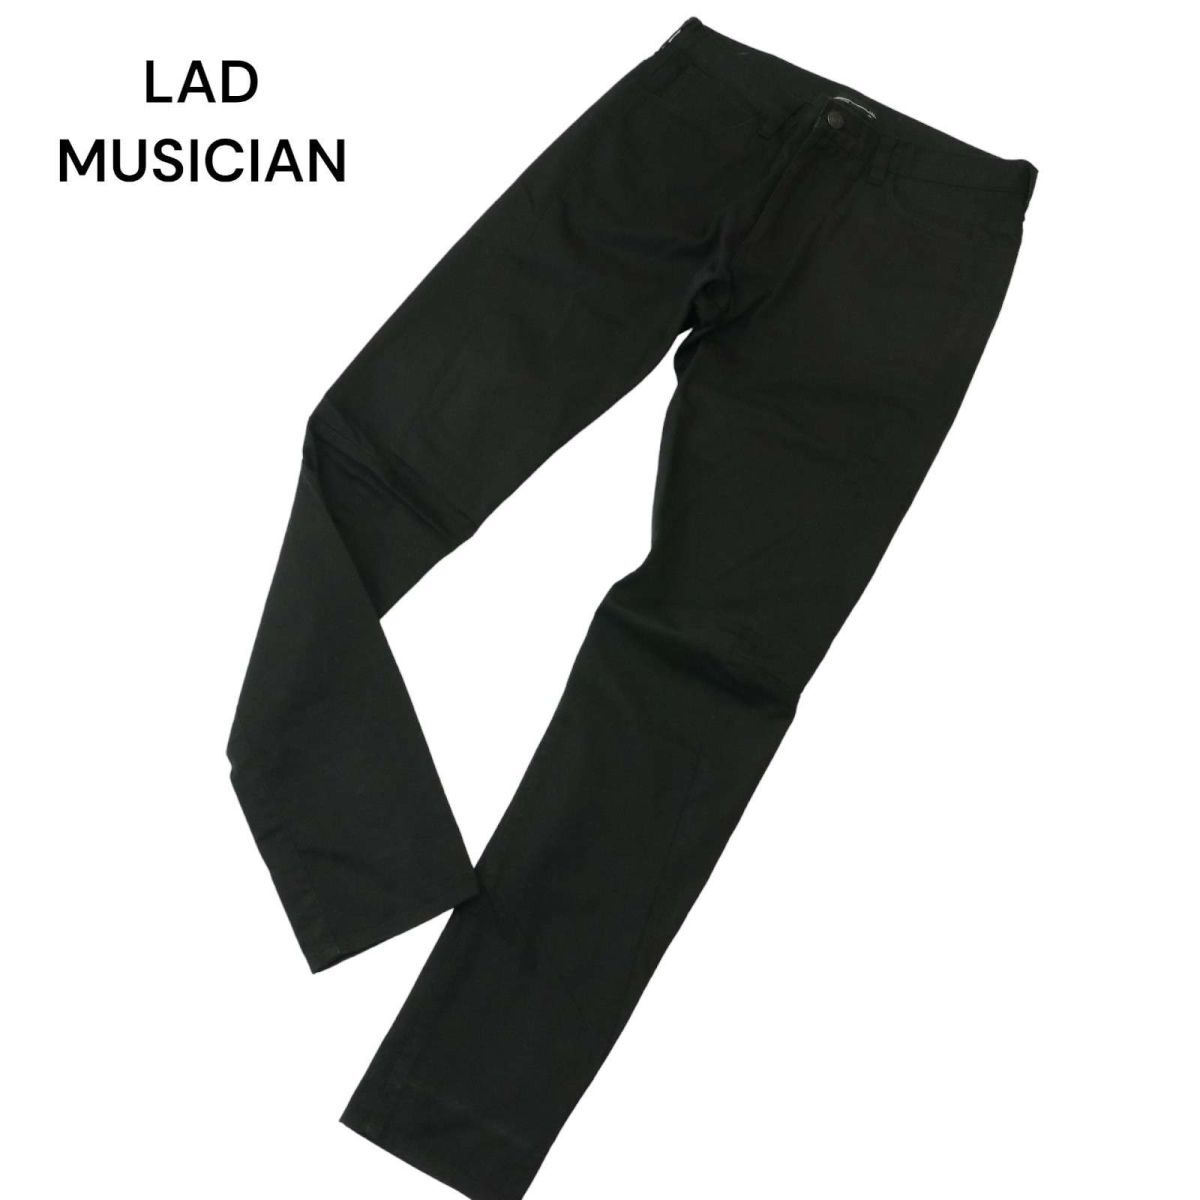 LAD MUSICIAN Lad Musician через год водоотталкивающая отделка * переключатель стрейч обтягивающий брюки Sz.44 мужской чёрный сделано в Японии A4B02220_5#R